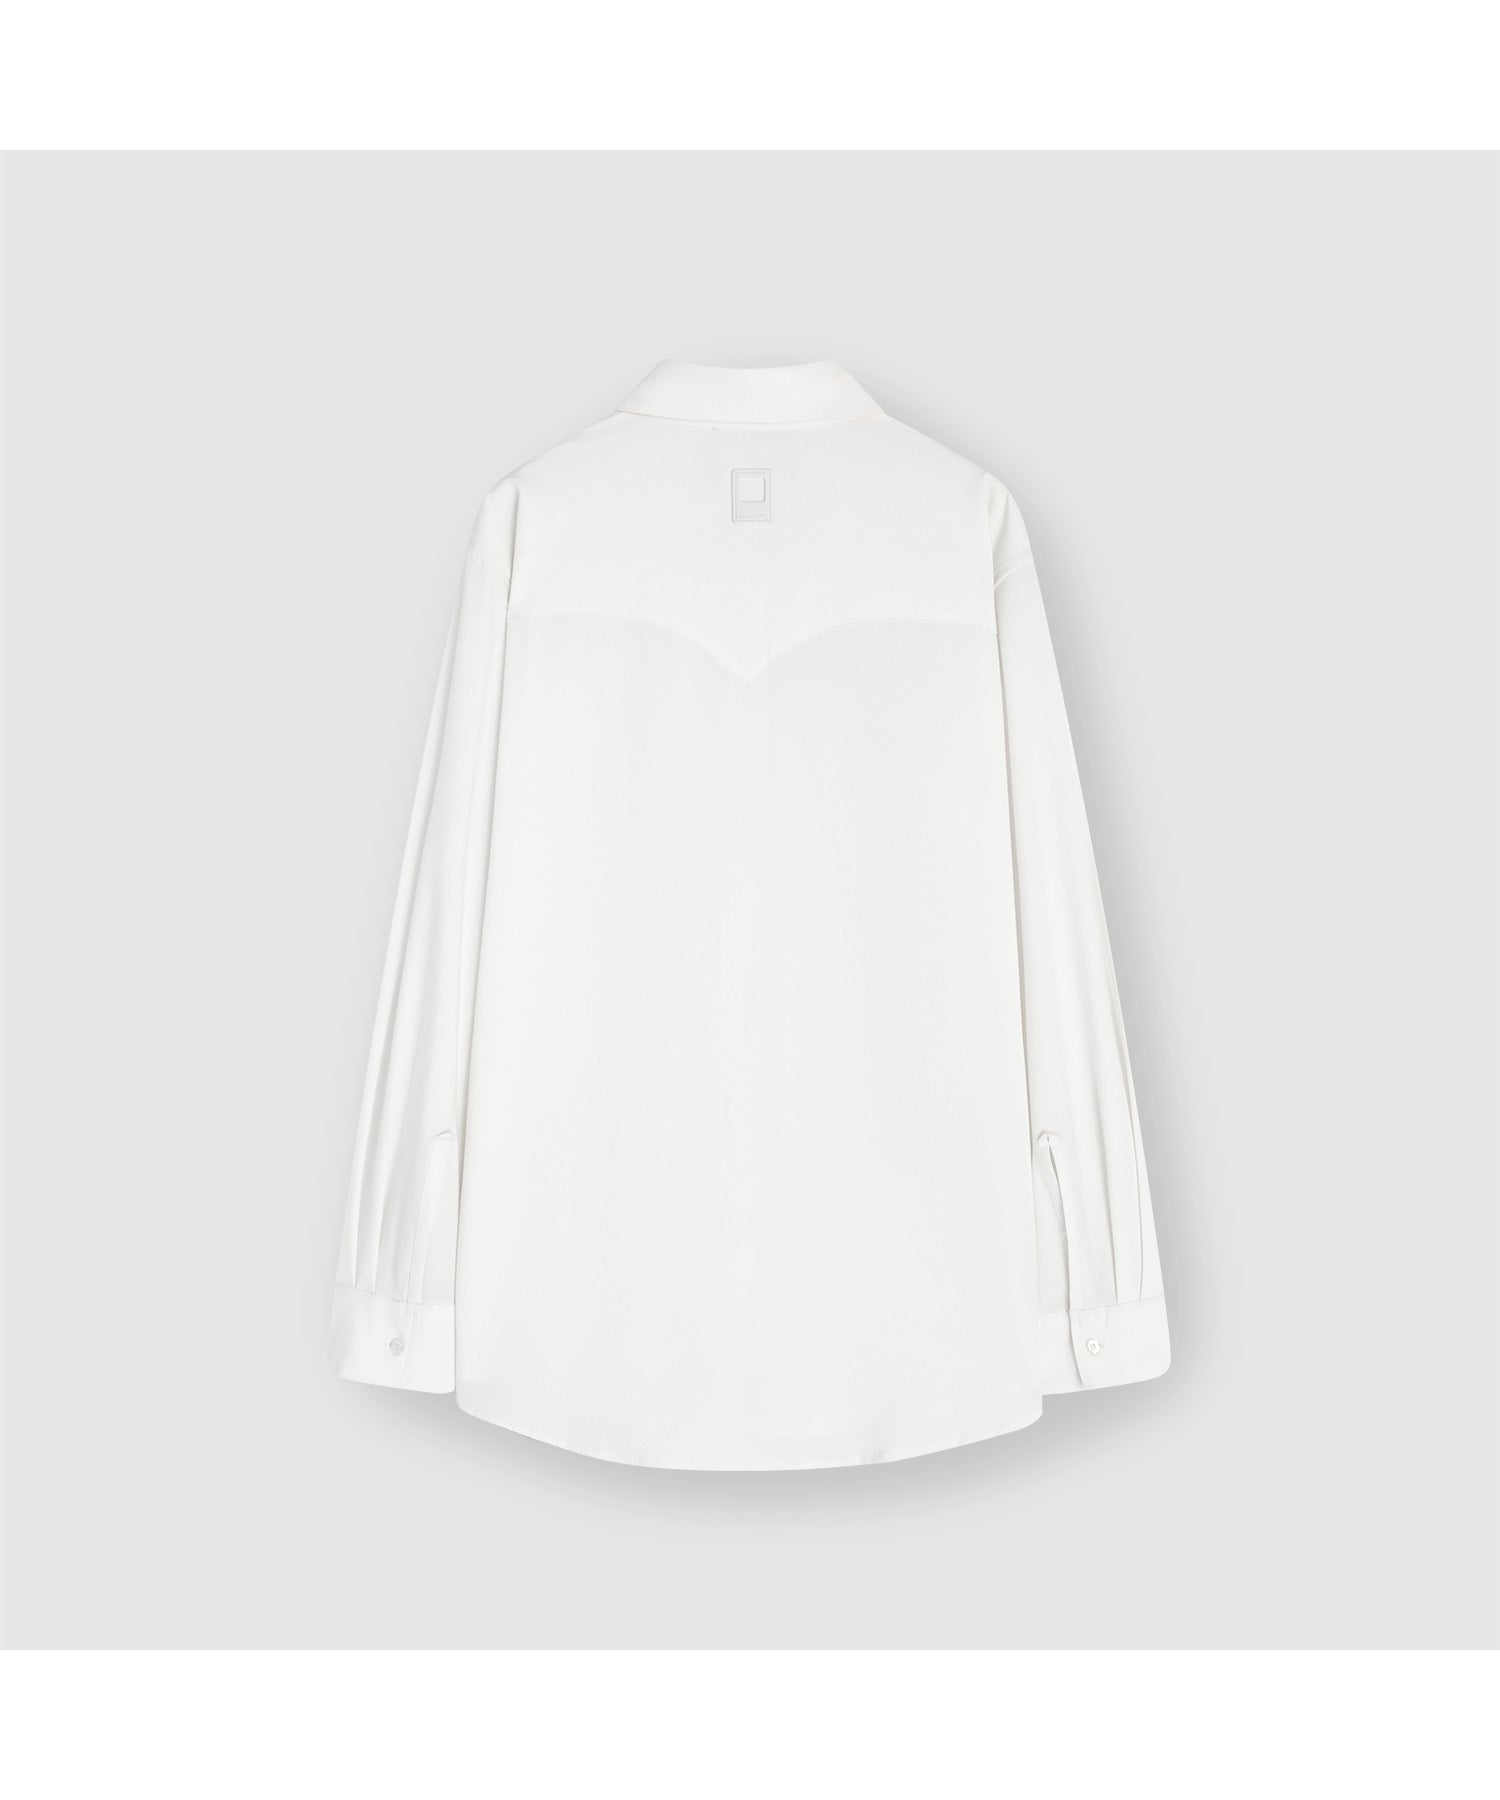 Simple basic yoke design shirt 